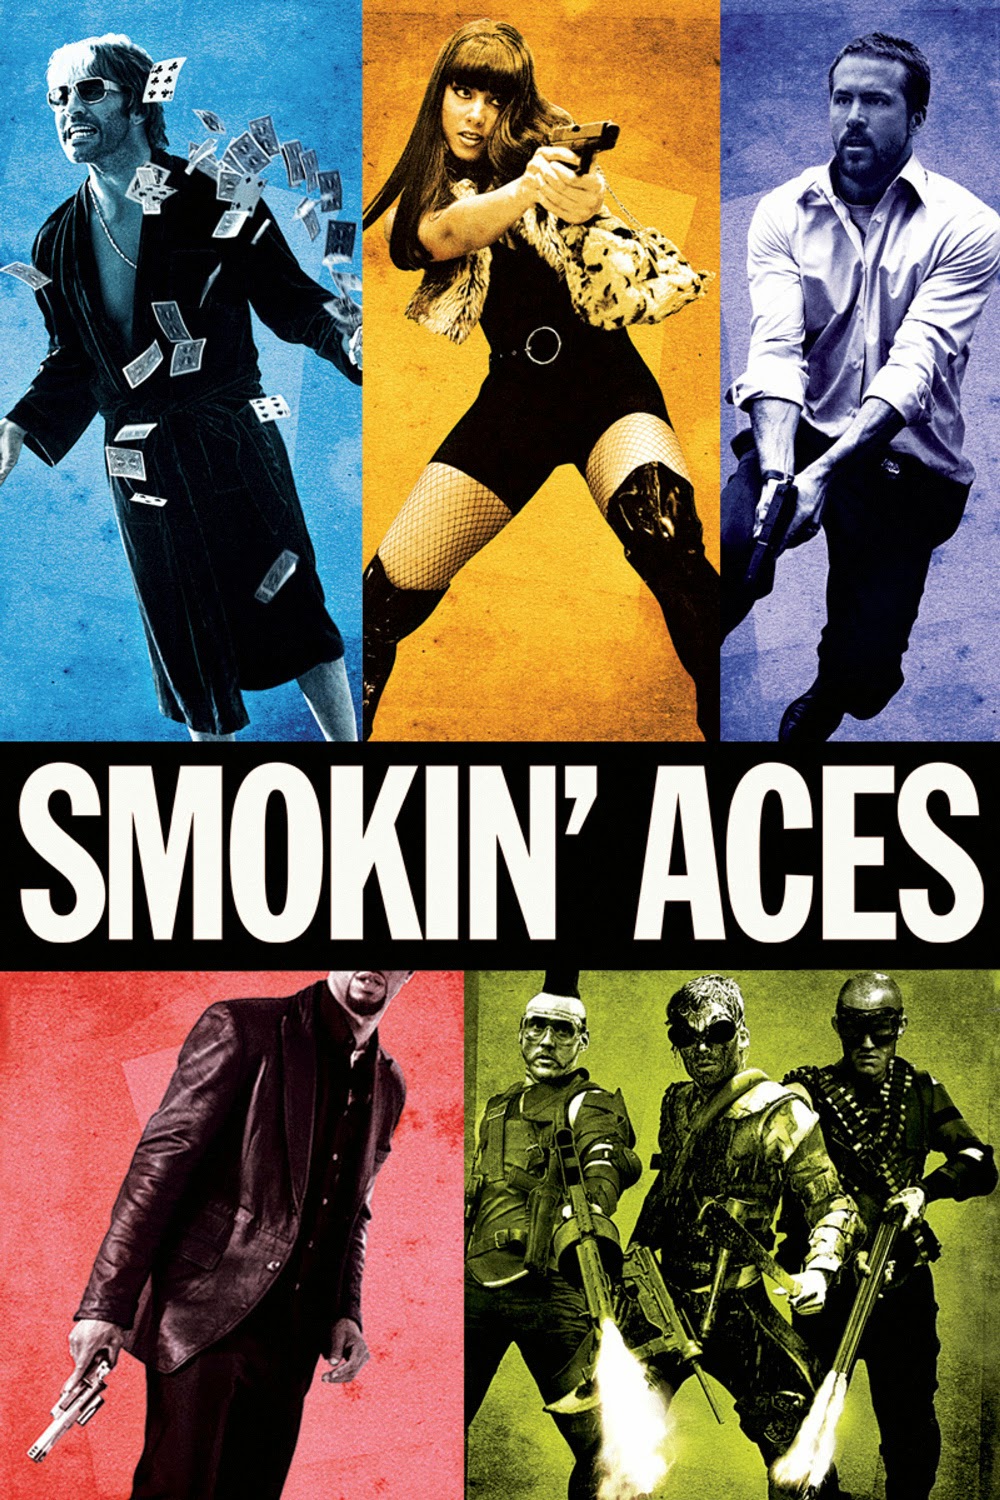 Smokin' Aces 2006